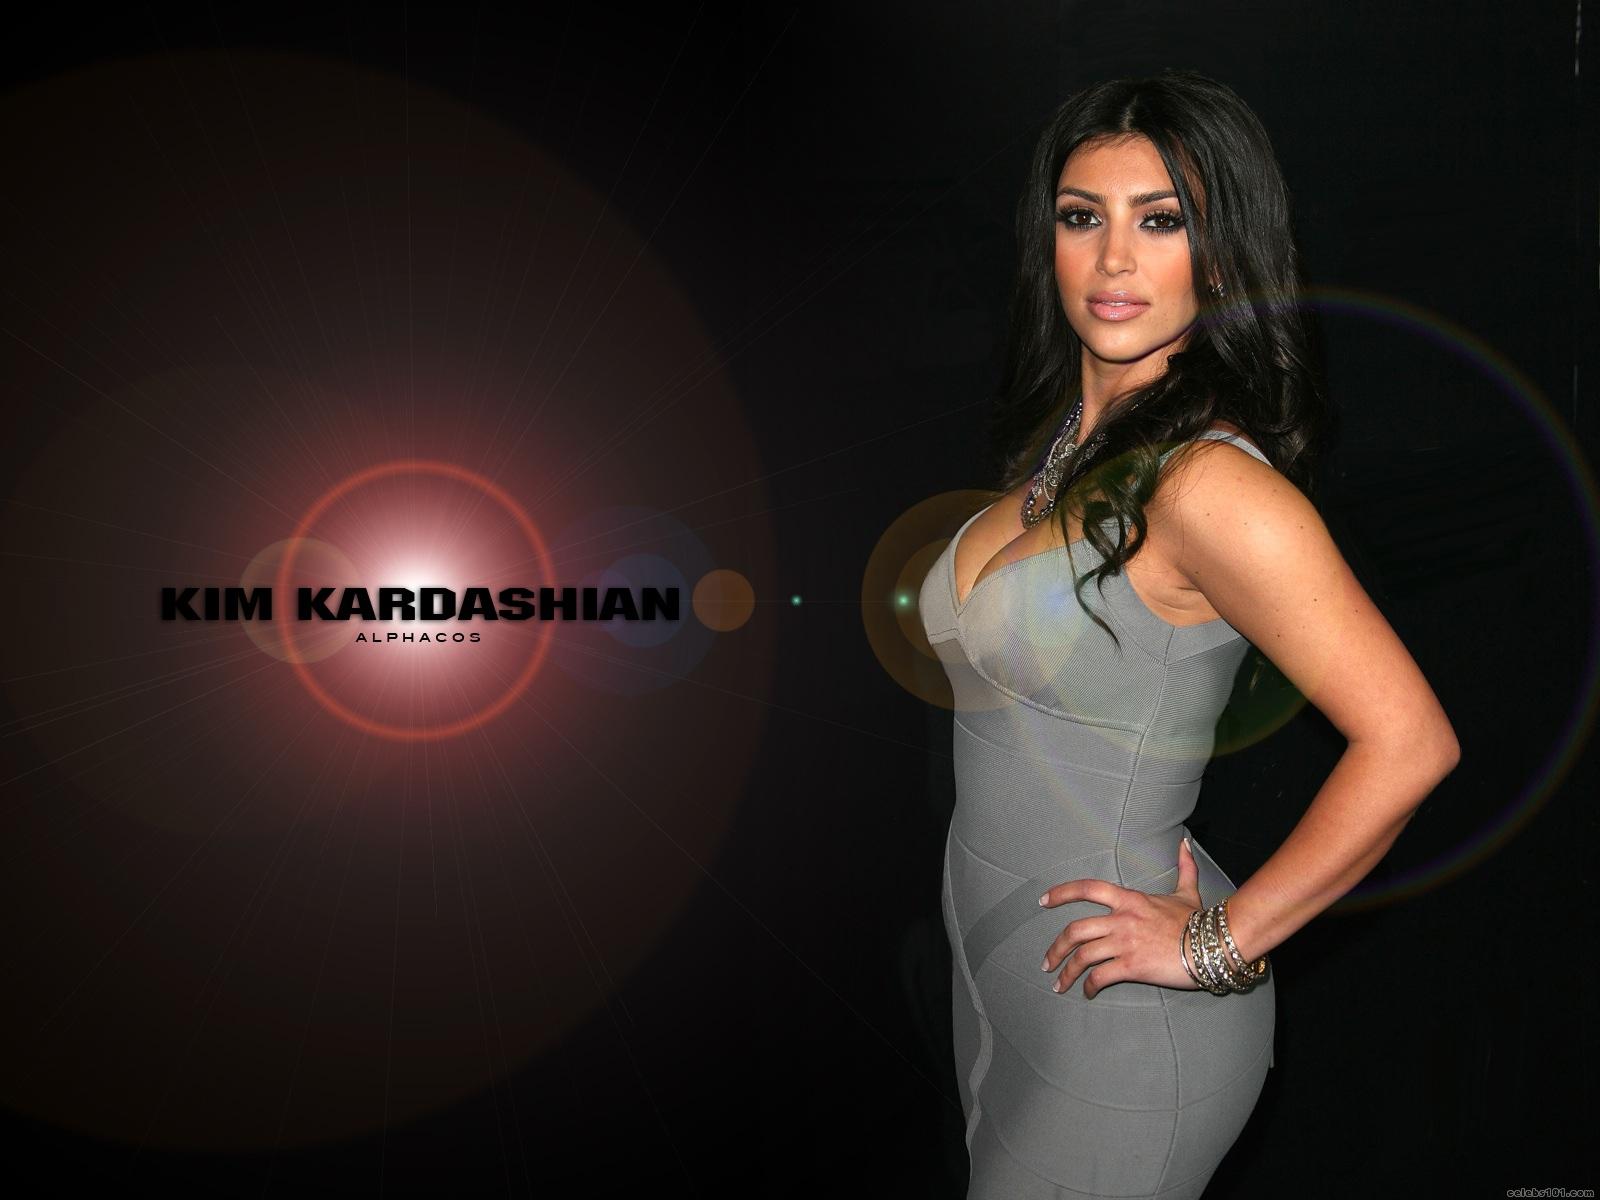 Kim Kardashian HQ Wallpapers  Kim Kardashian Wallpapers  18069  Oneindia  Wallpapers